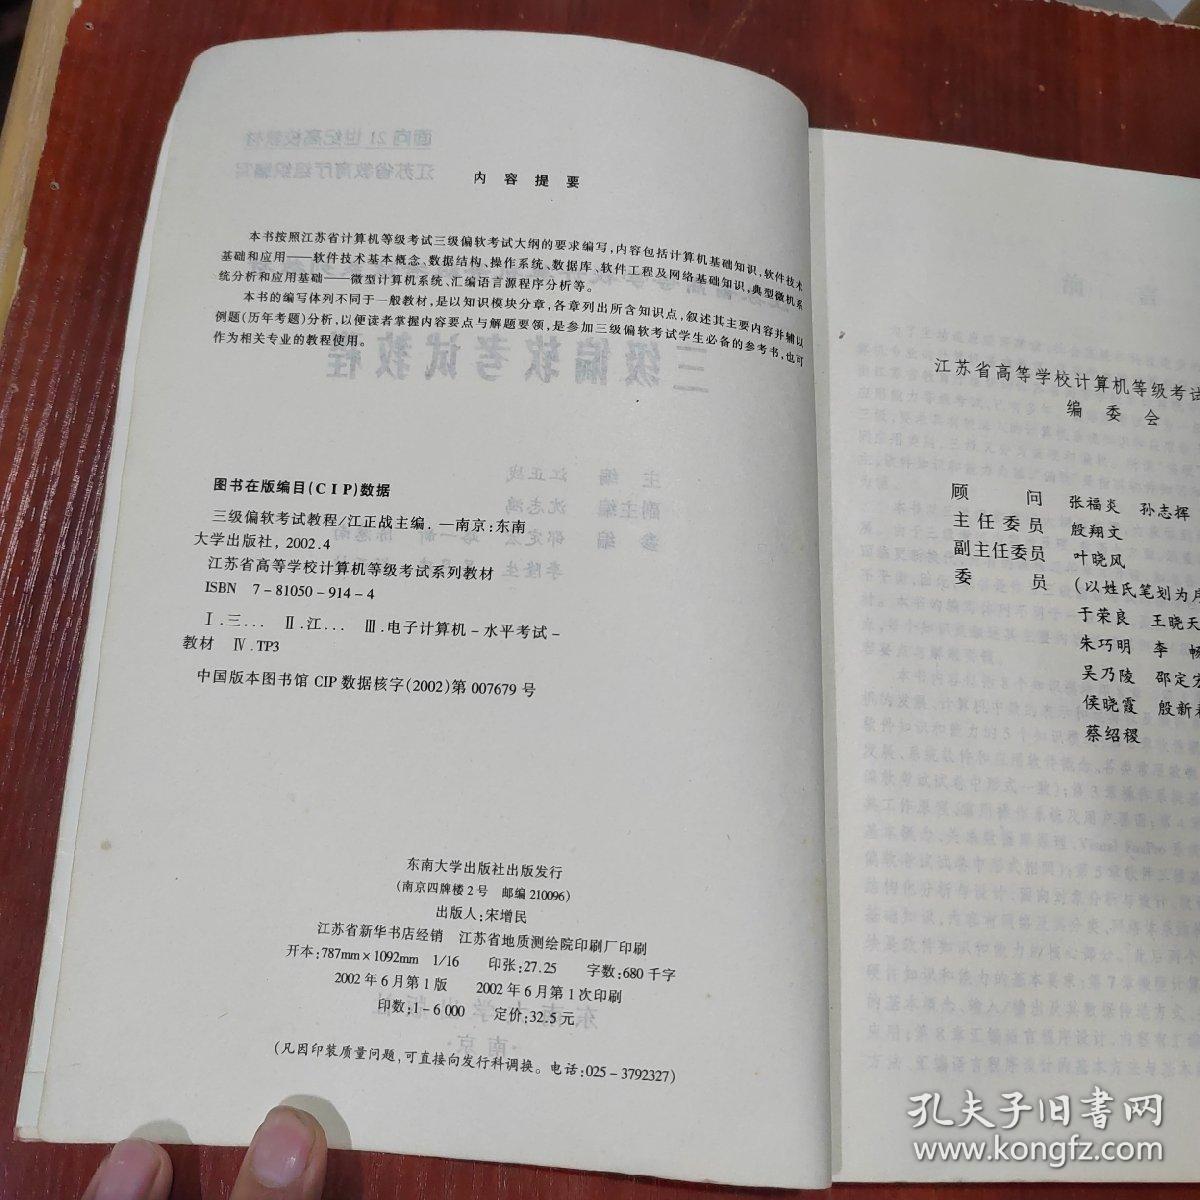 江苏省高等学校计算机等级考试系列教材：三级偏软考试教程 有铅笔字迹划线